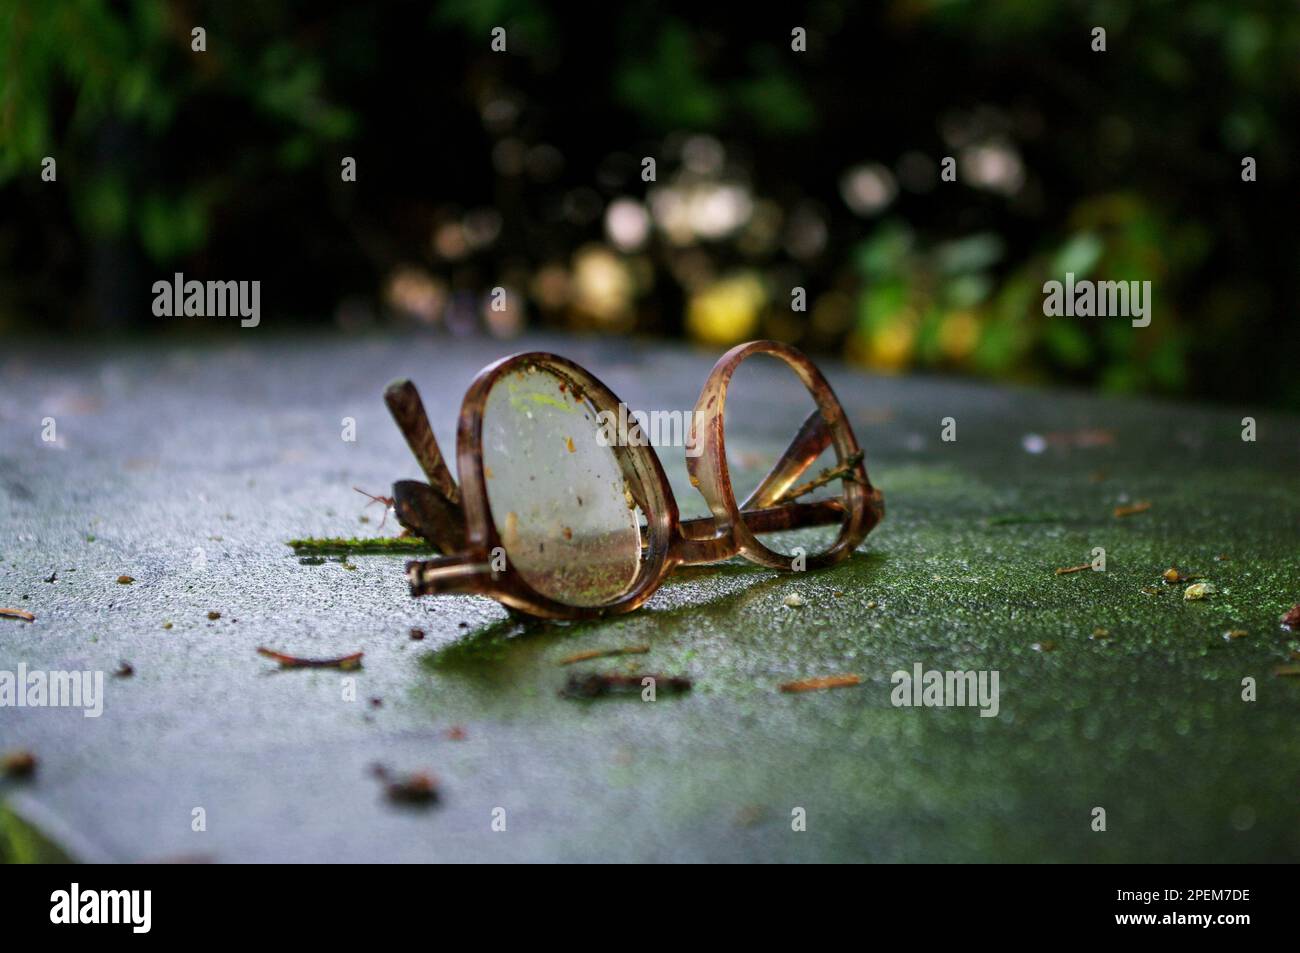 Coppia di occhiali rotti, montatura dello spettacolo su cemento, artsy, melancholic, closeup Foto Stock